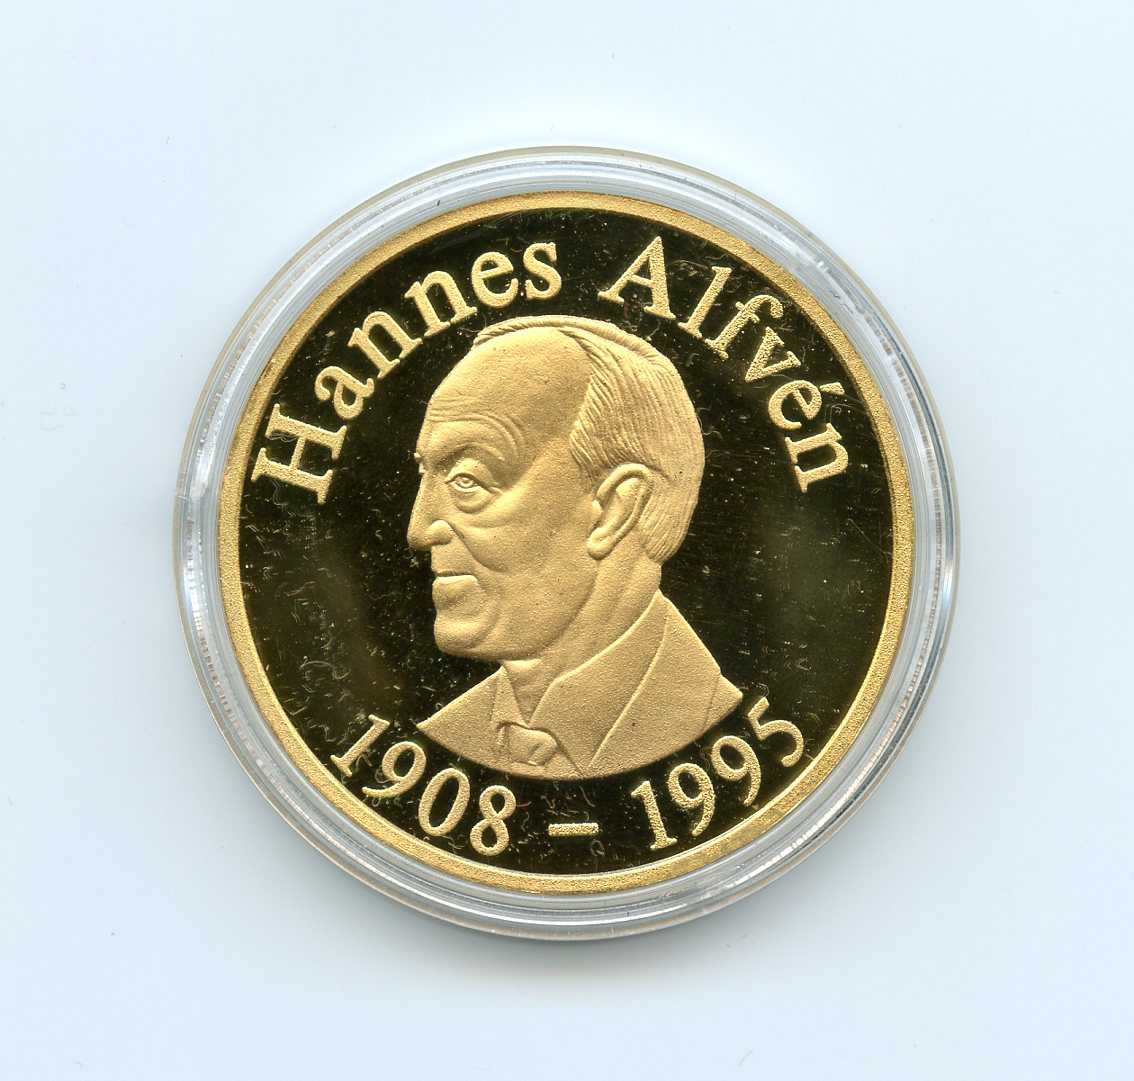 ハンス・アルヴェーン賞のメダルの写真